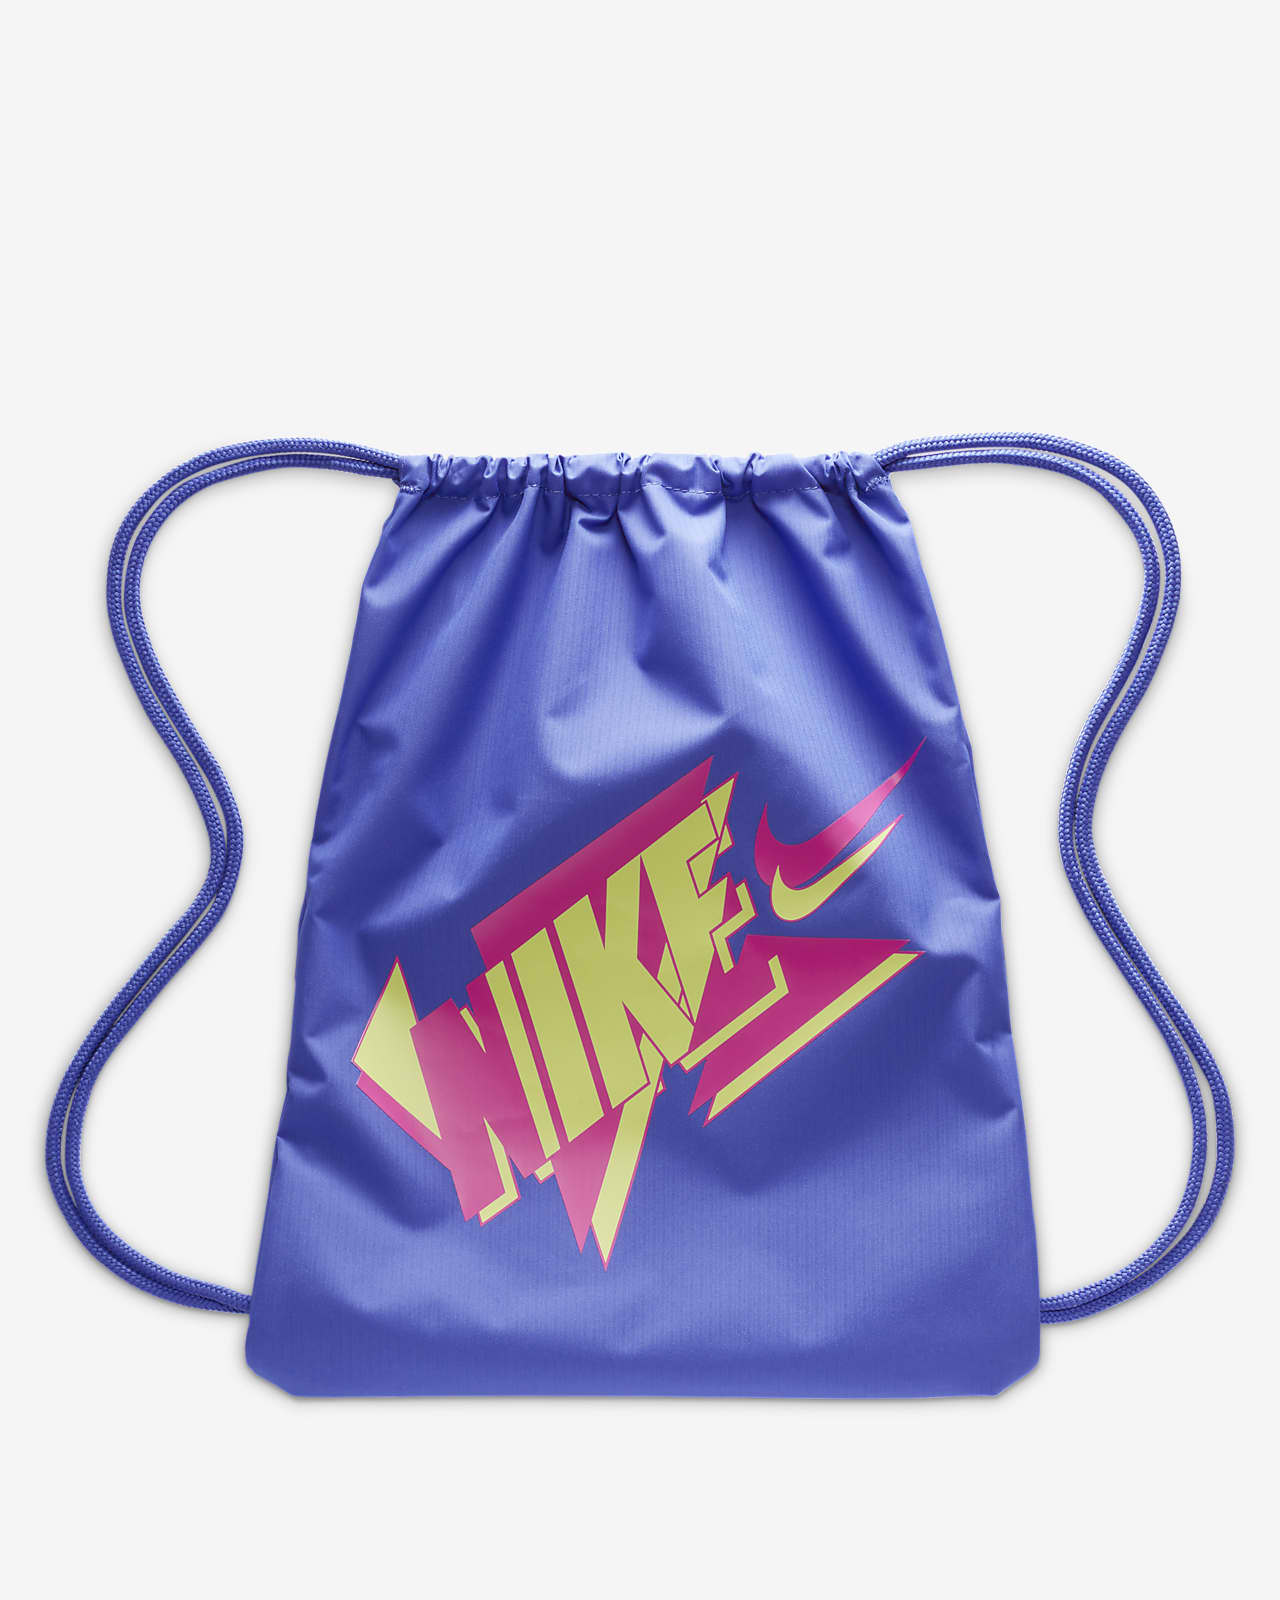 Nike Kids' Drawstring Bag (12L) in Grey